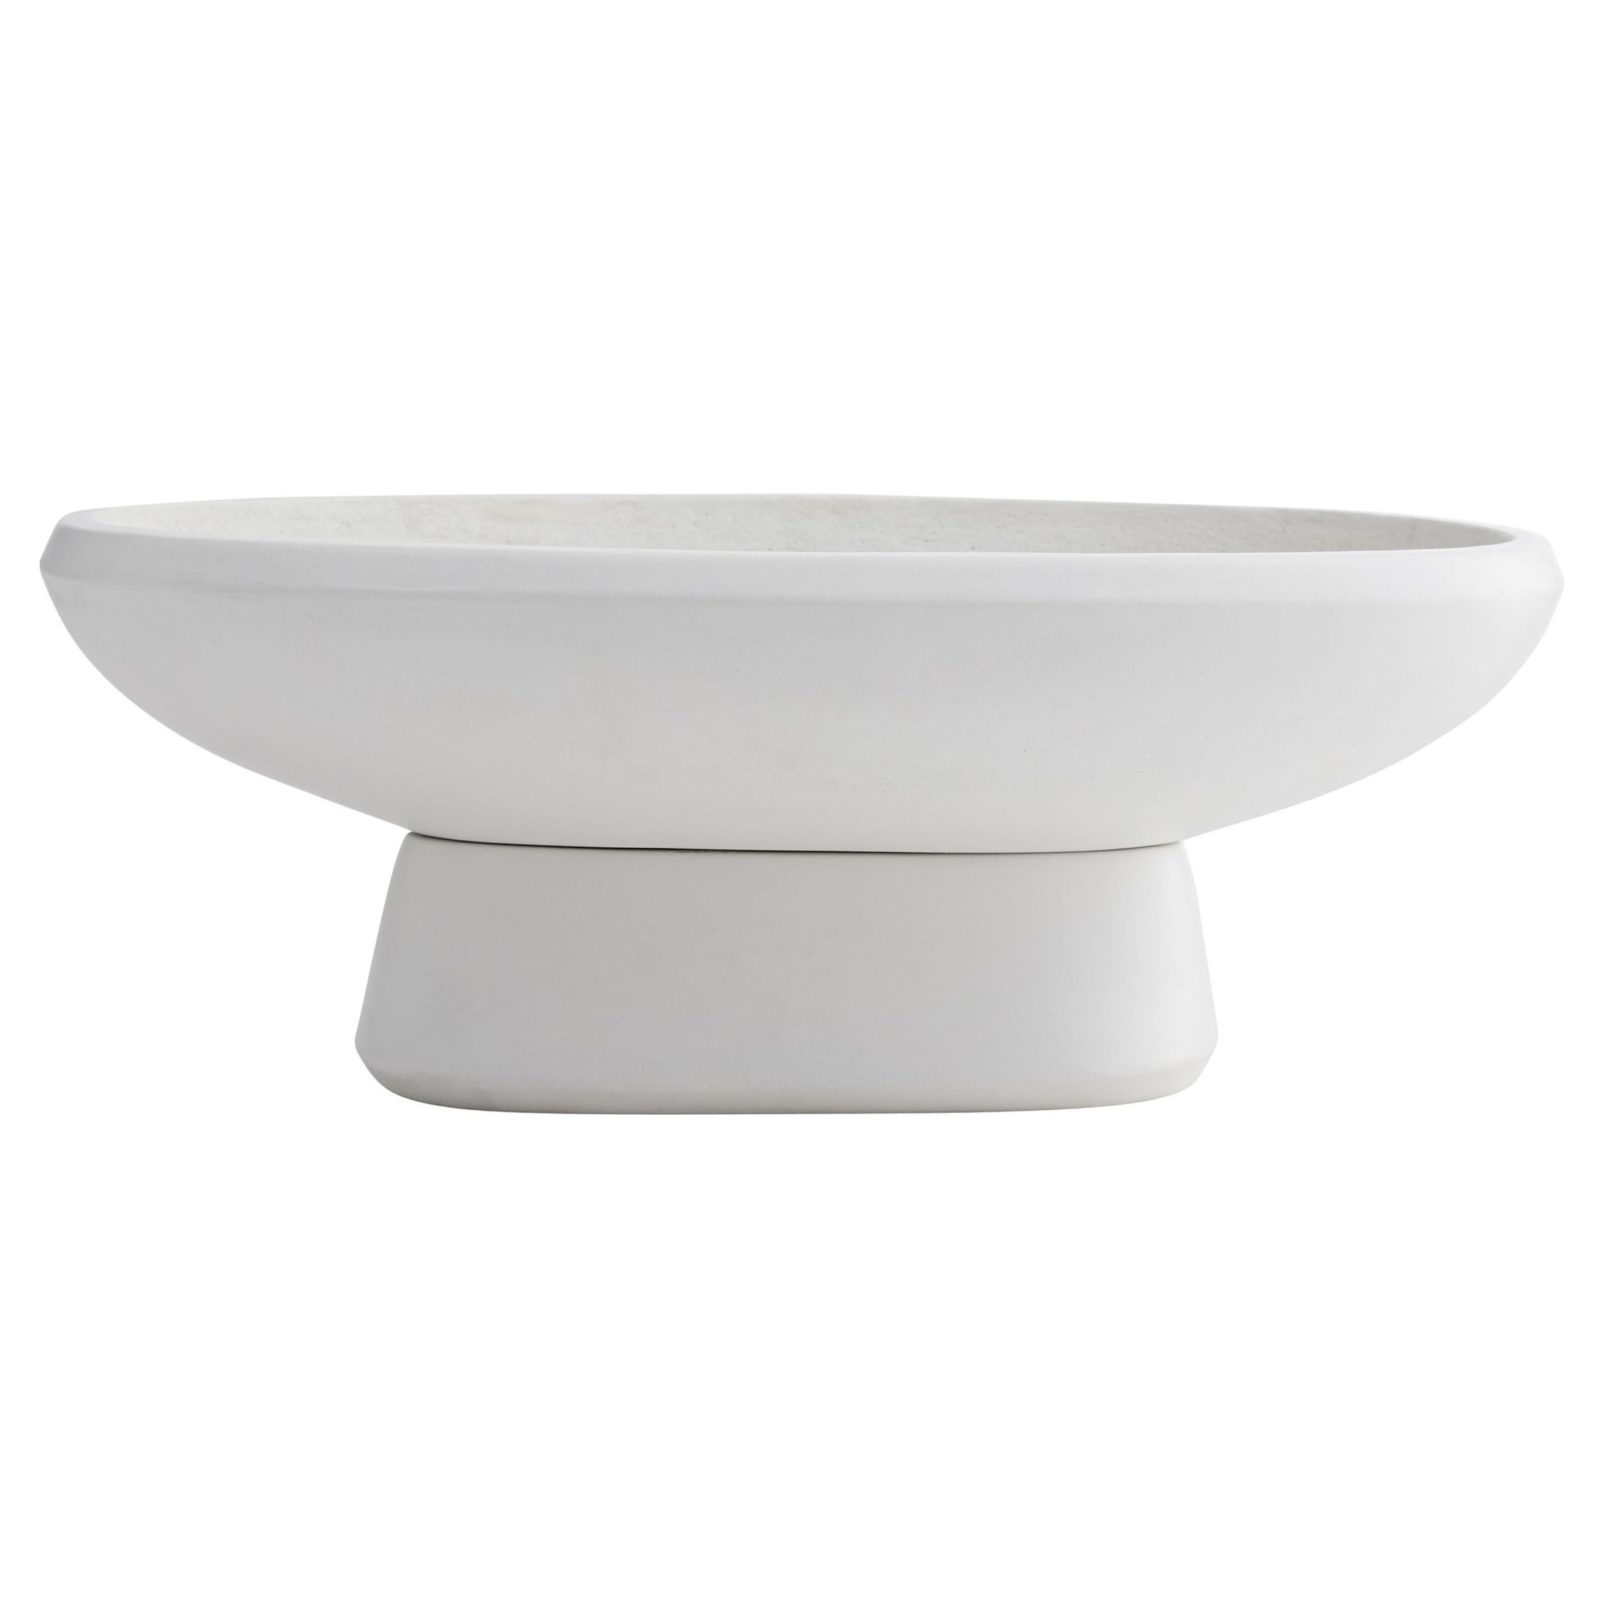 Berenjena Iniciativa Completamente seco white decorative bowl - concrete white accent bowl or planter